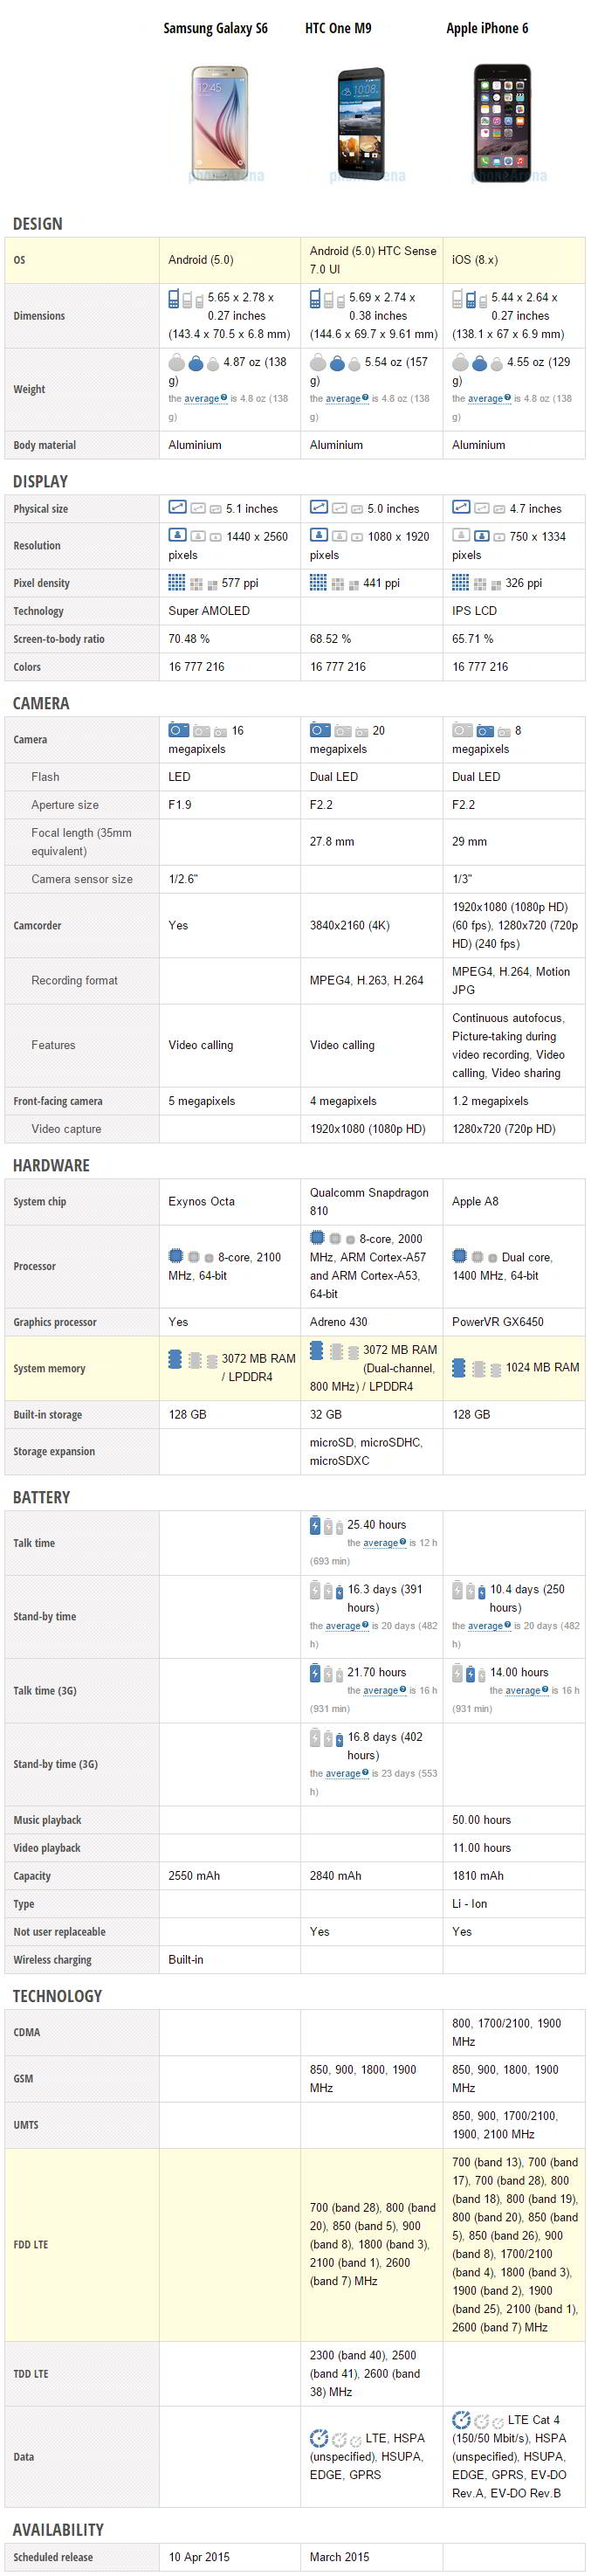 Vergleich der technischen Daten des Samsung Galaxy S6 vs. HTC One M9 vs. Apple iPhone 6